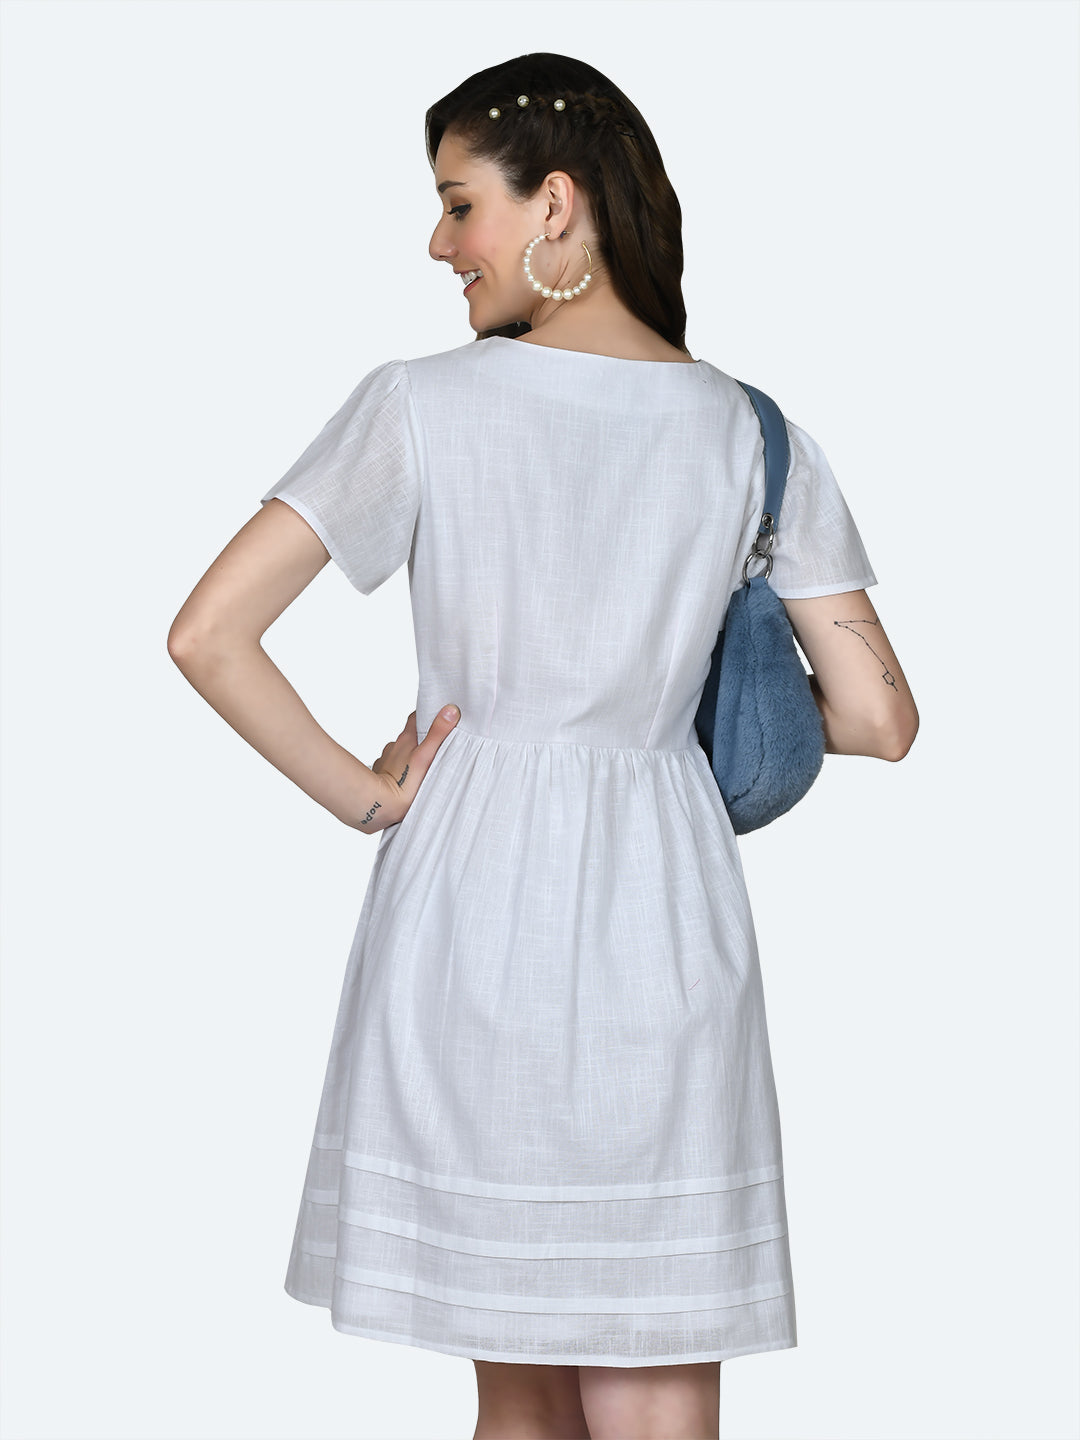 White Solid Short Dress For Women